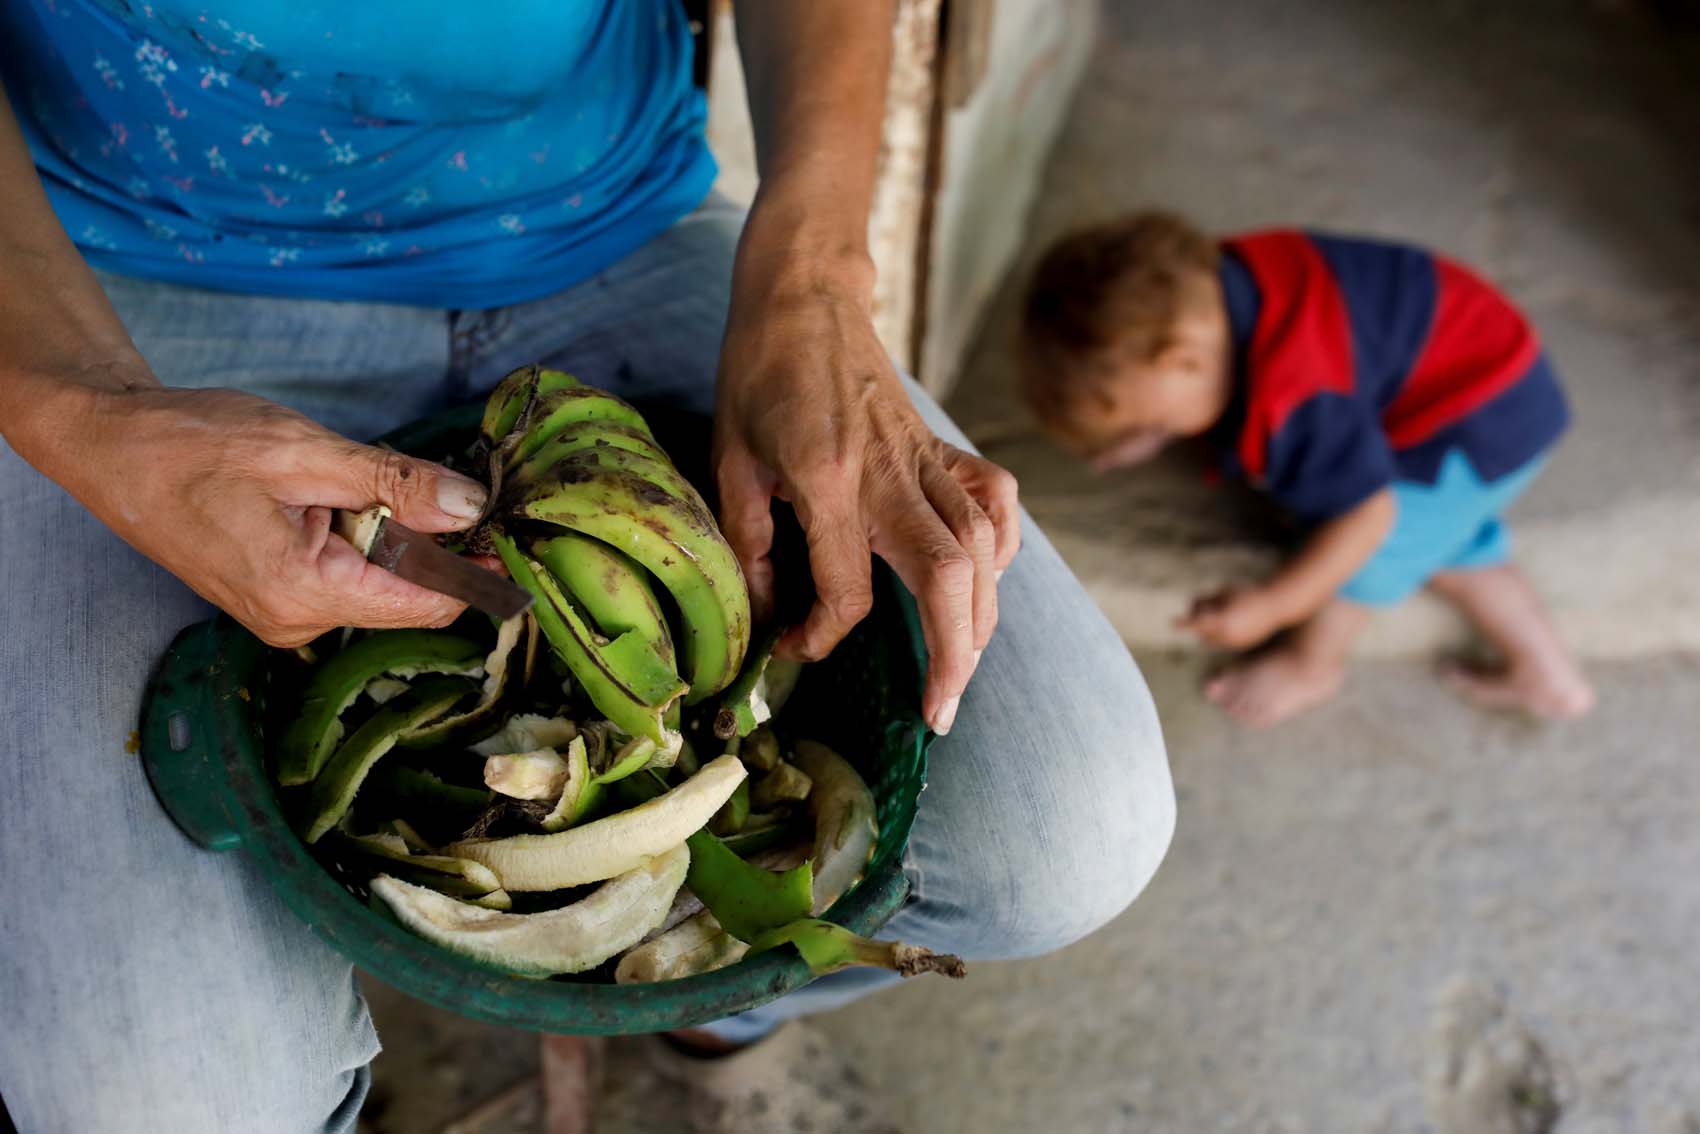 “Es un dolor que nunca superarás”: Crisis en Venezuela cuando los bebés mueren de desnutrición